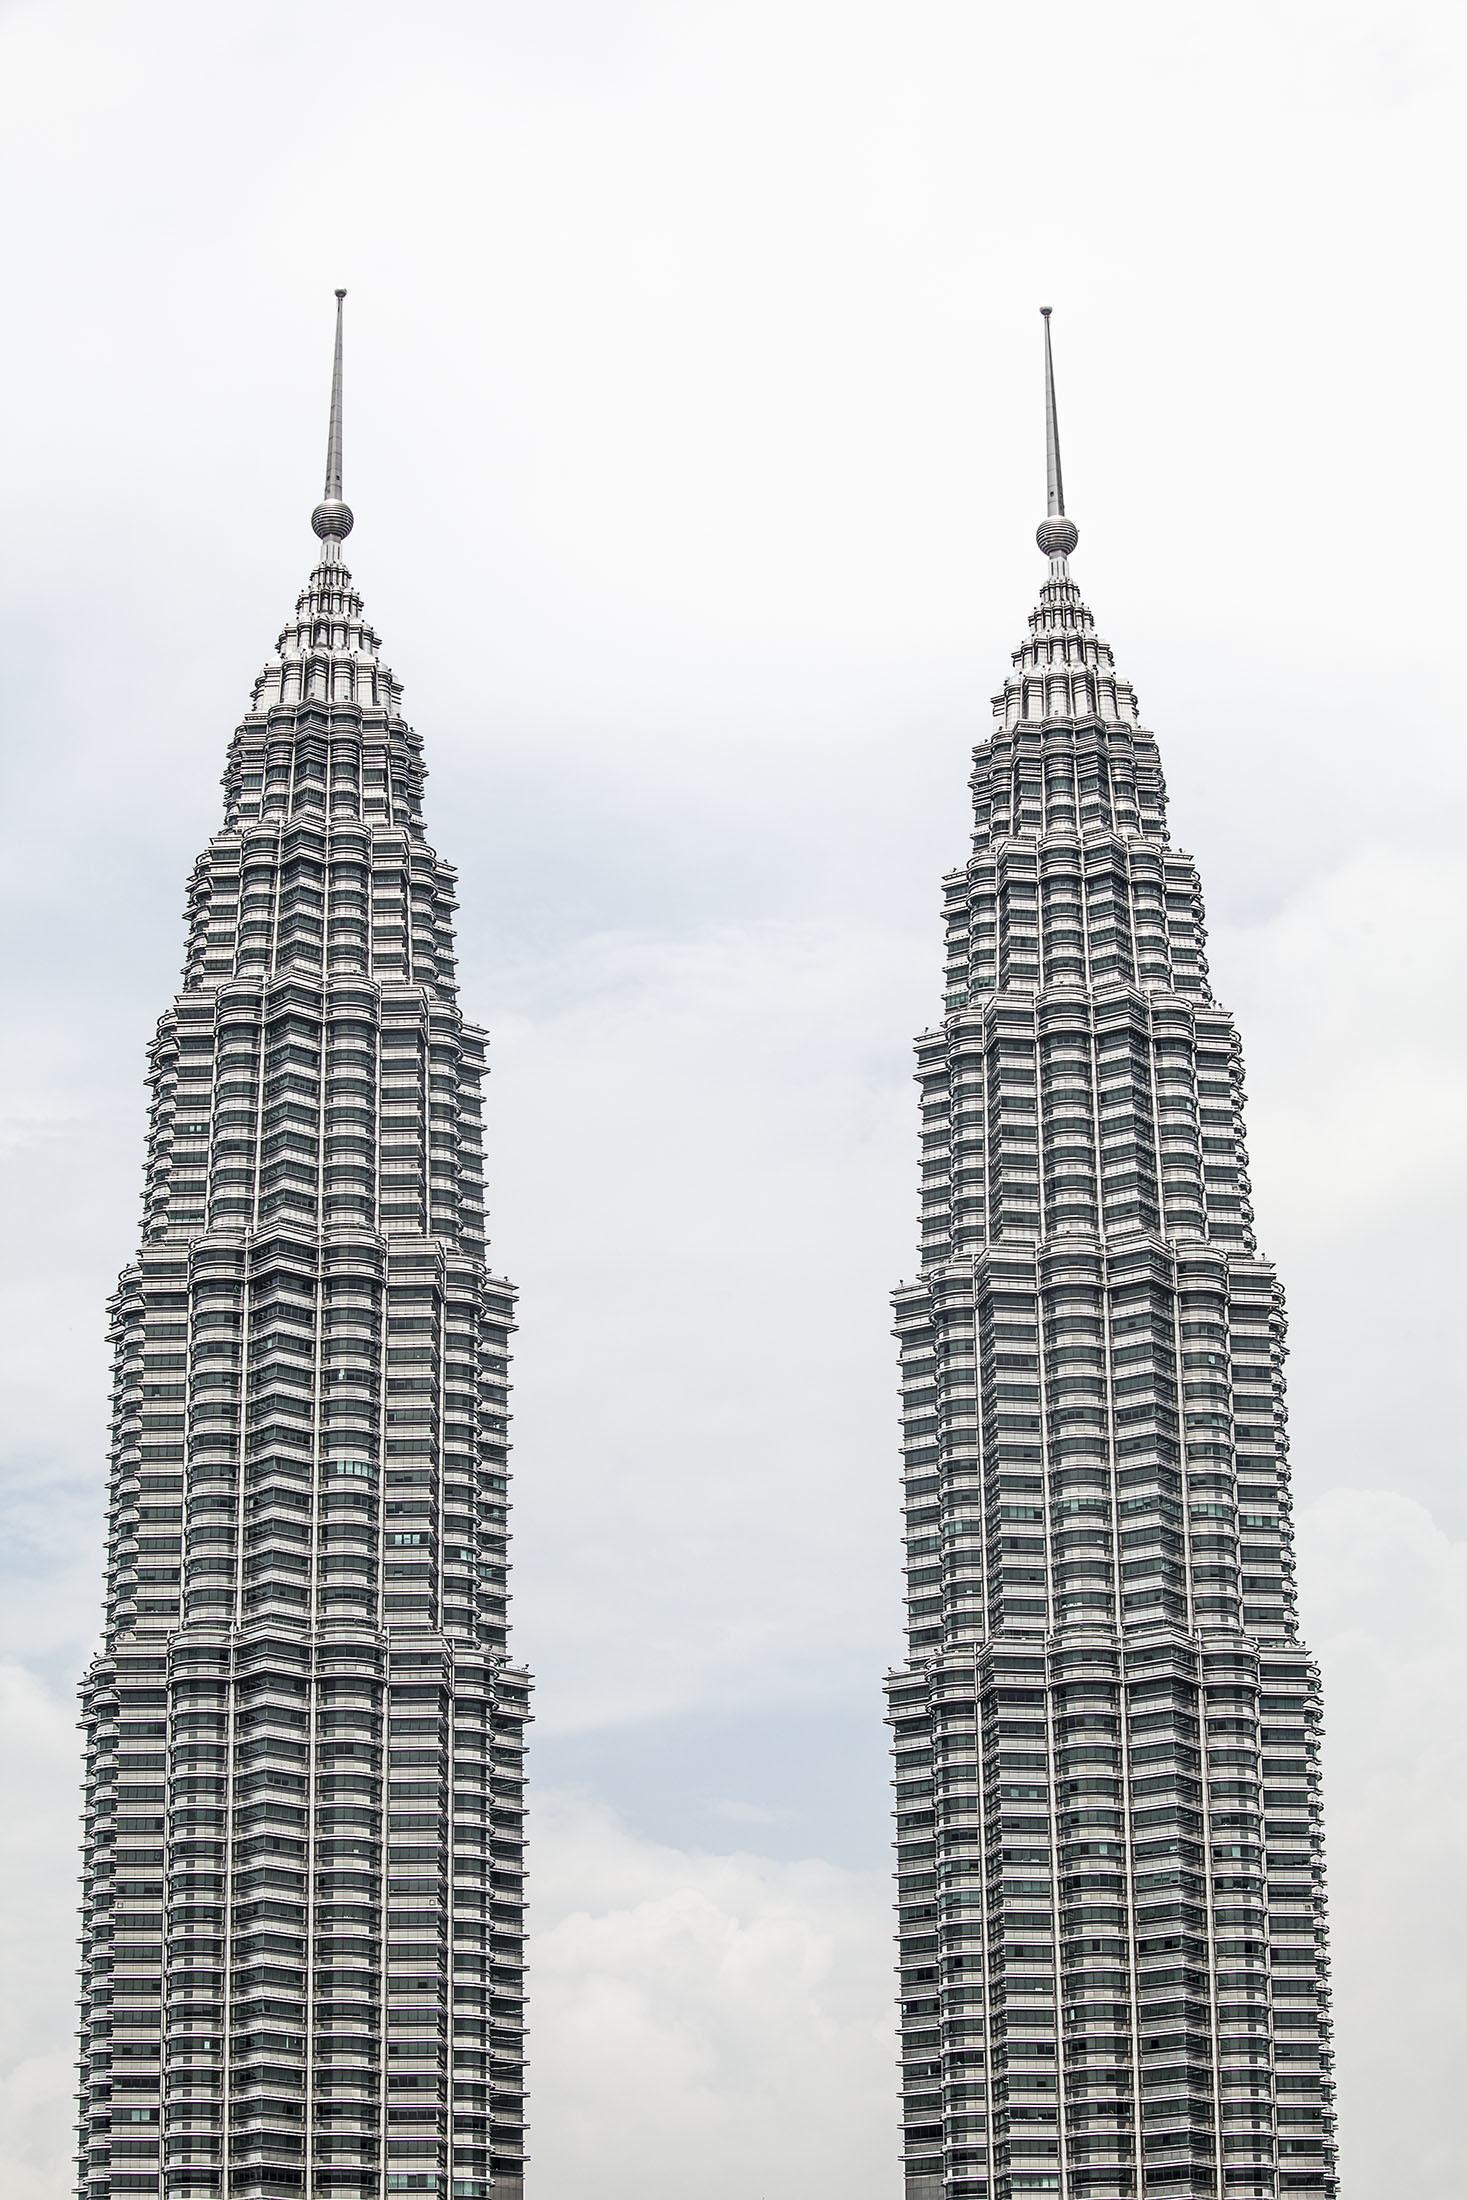 The top of Petronas Towers in Kuala Lumpur Malaysia